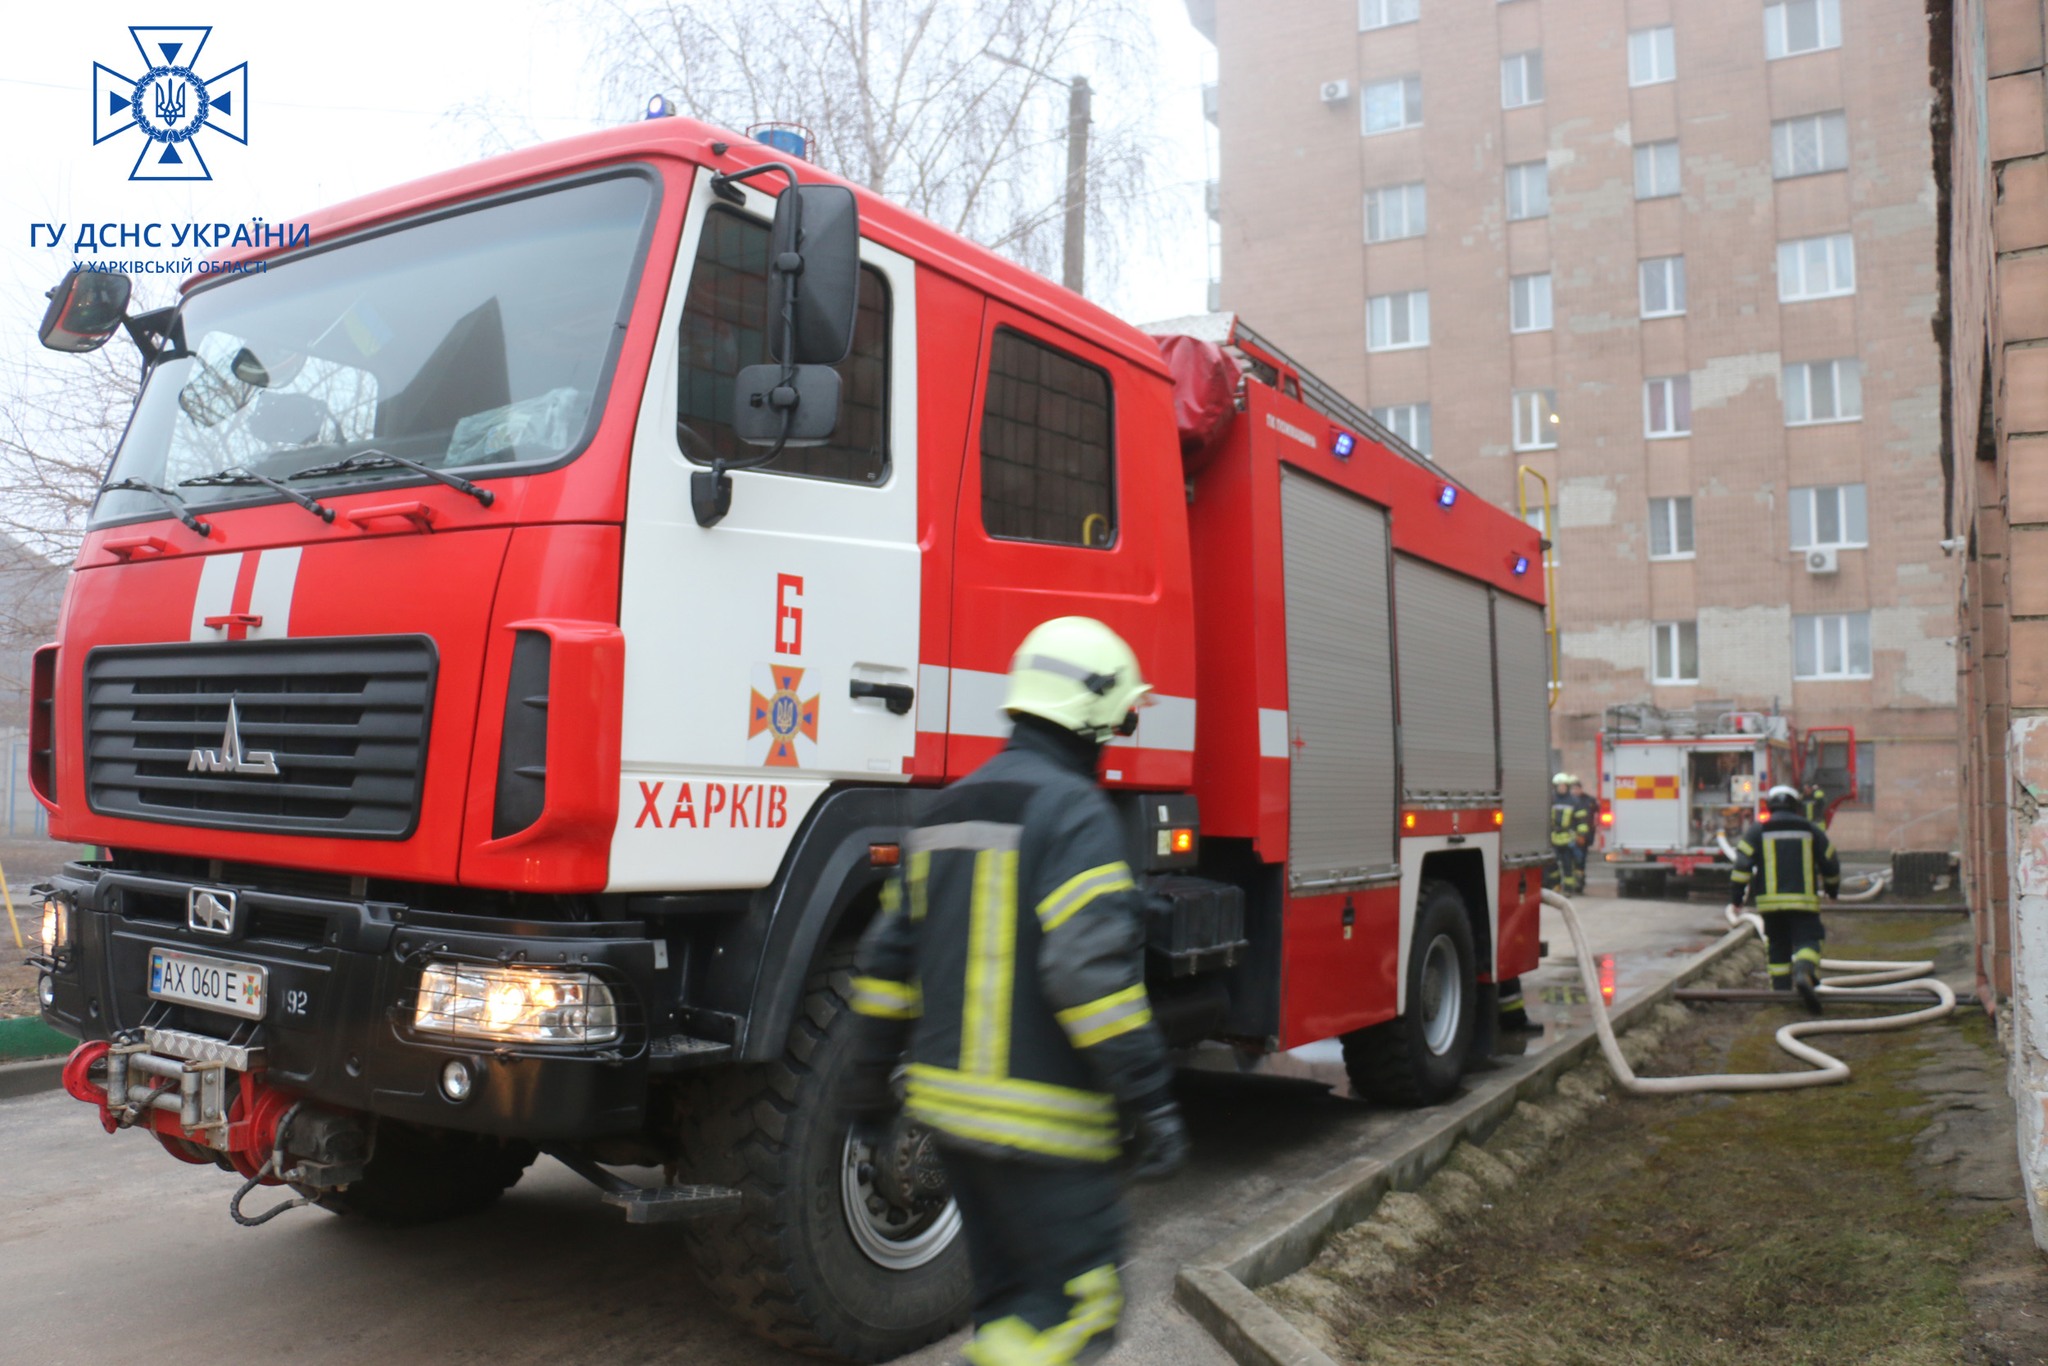 В Харькове бойцы ГСЧС спасли из горящей девятиэтажки десятерых человек (фото)